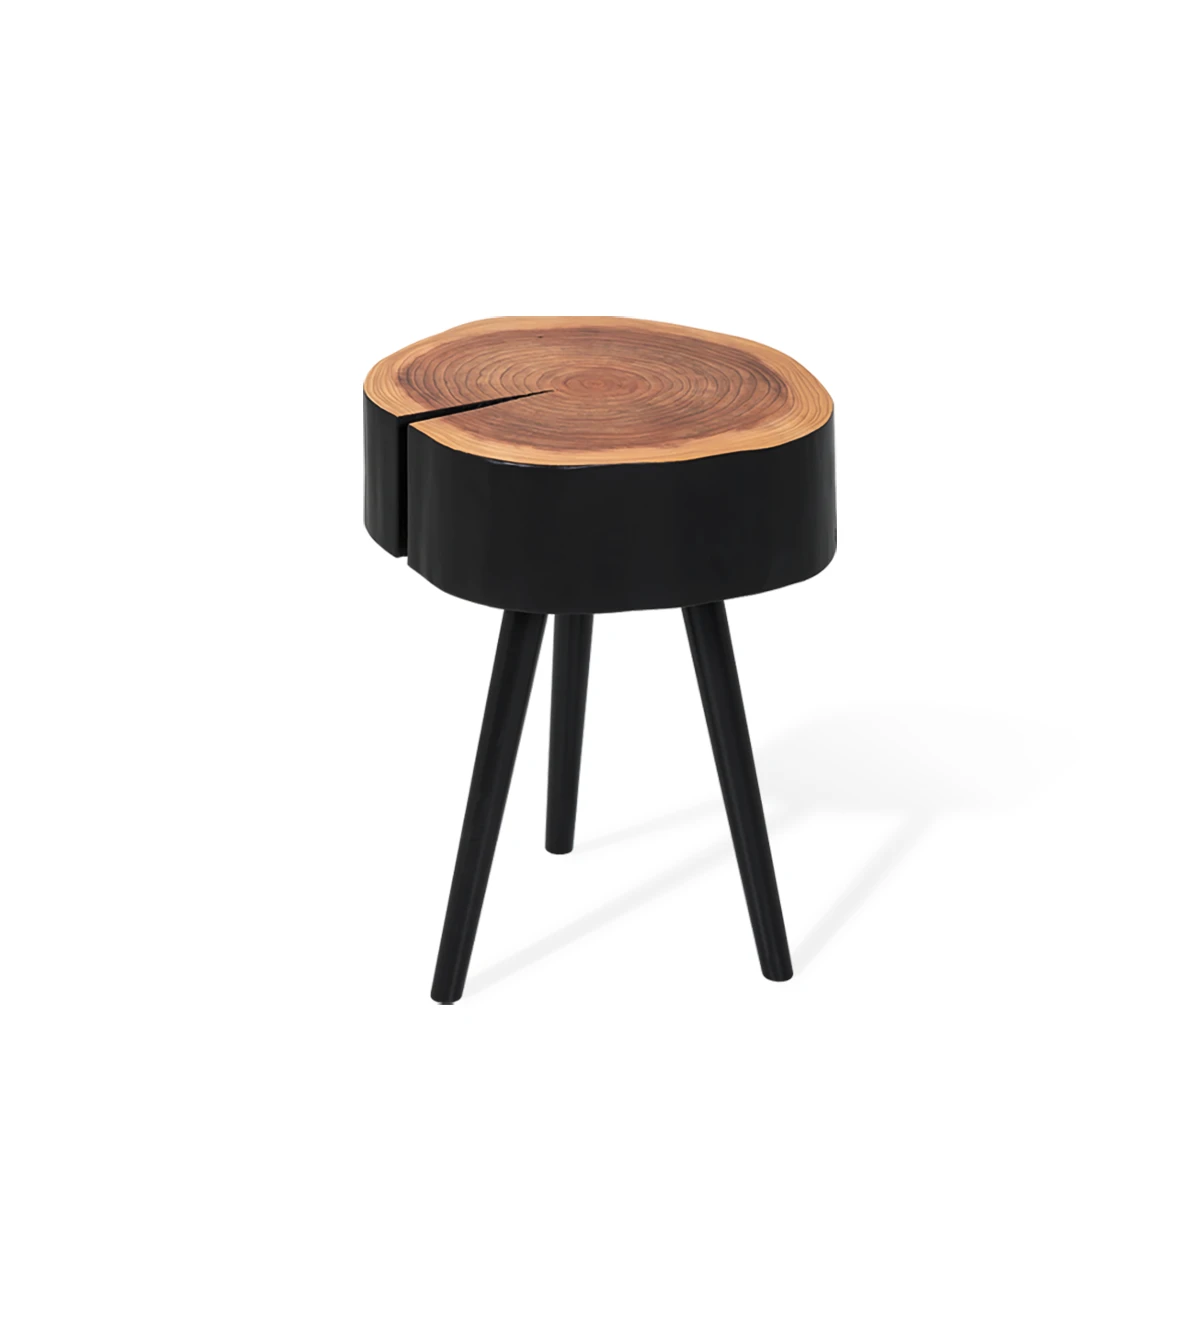 Table d'Appui tronc en bois de cryptoméria naturel laqué noir, avec 3 pieds tournés laqués noir.